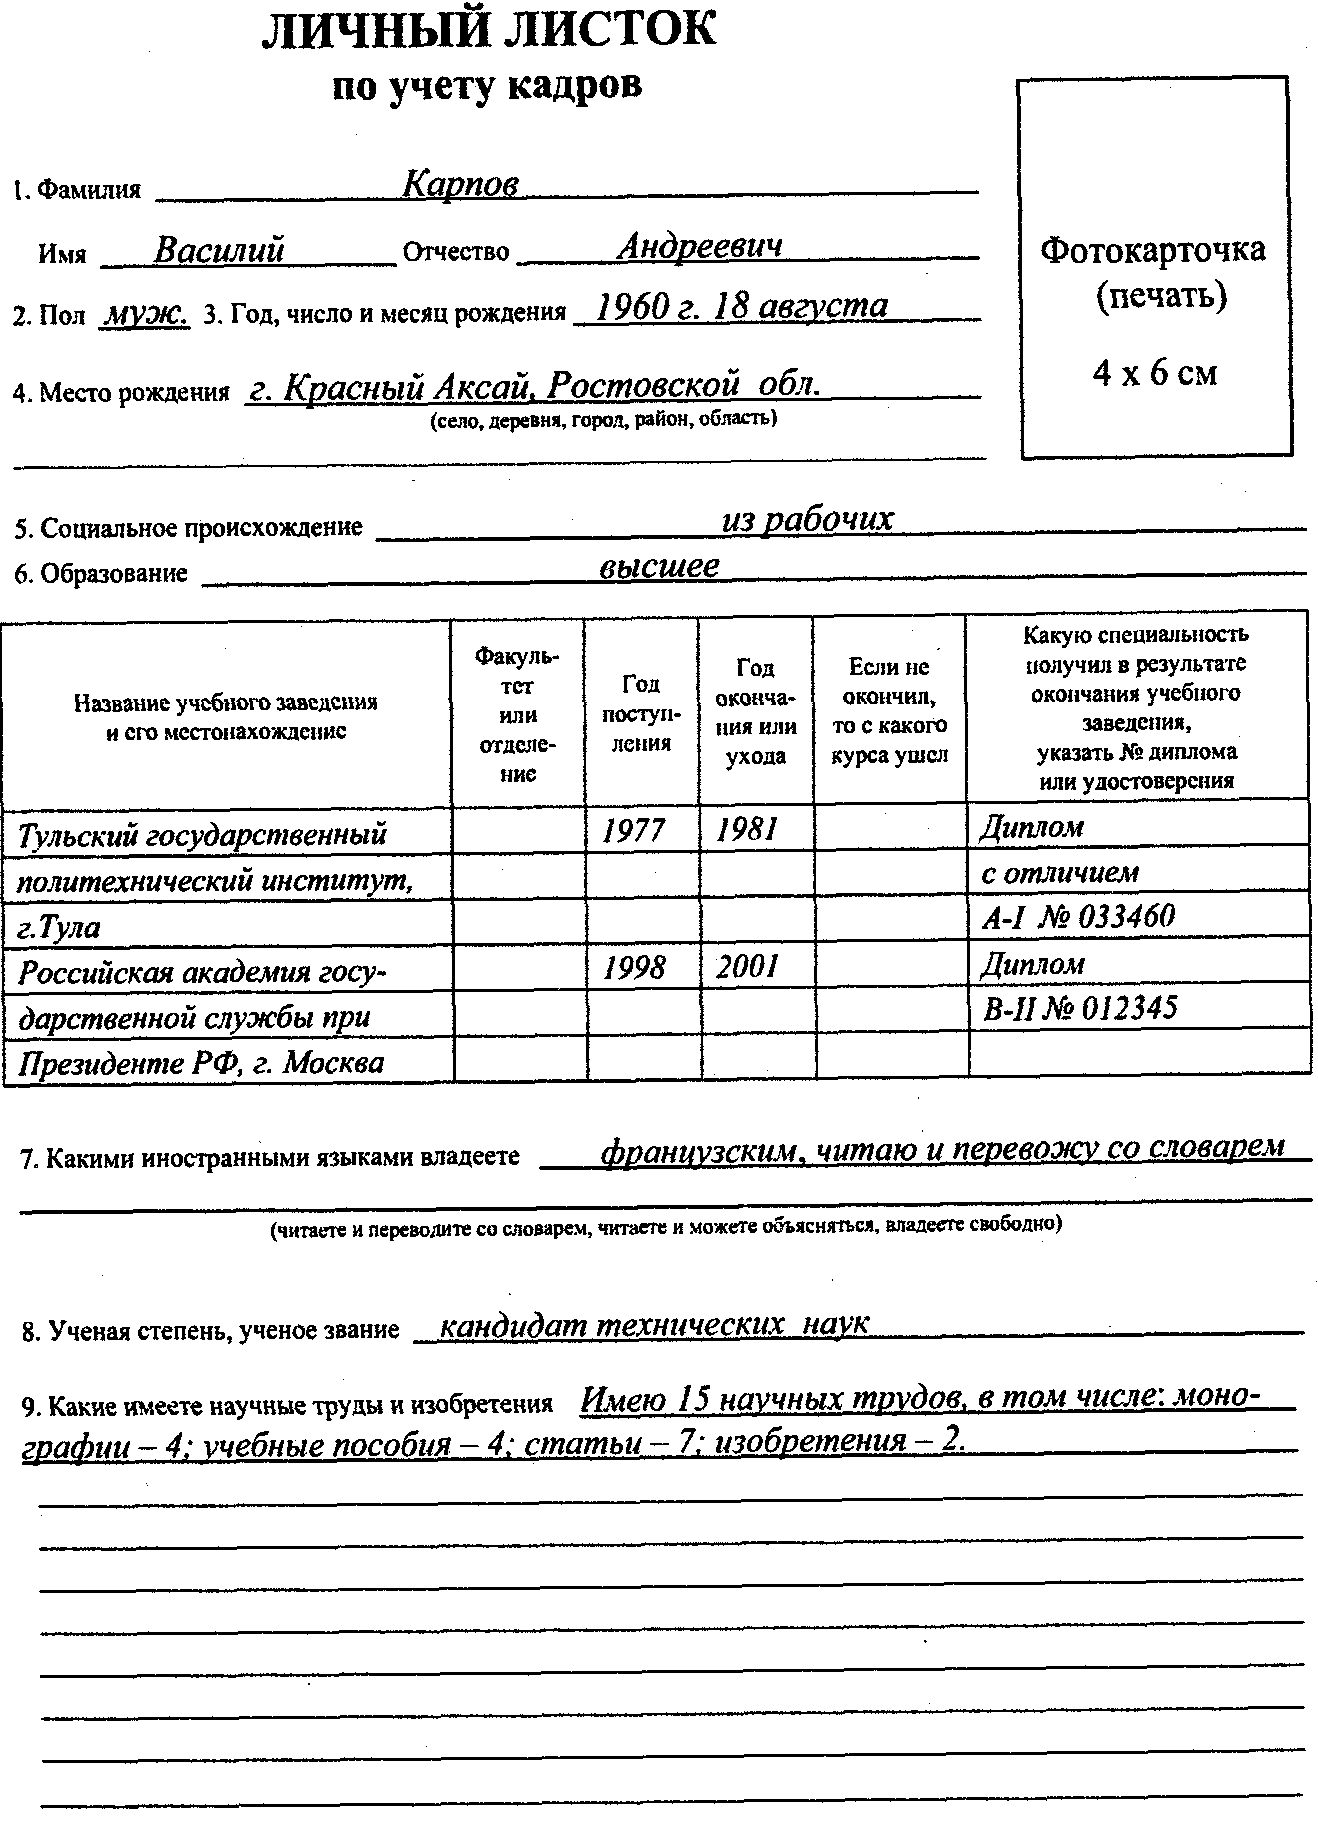 Личный листок по учету кадров (образец заполнения) - образец рб 2021. белформа - бланки документов, беларусь